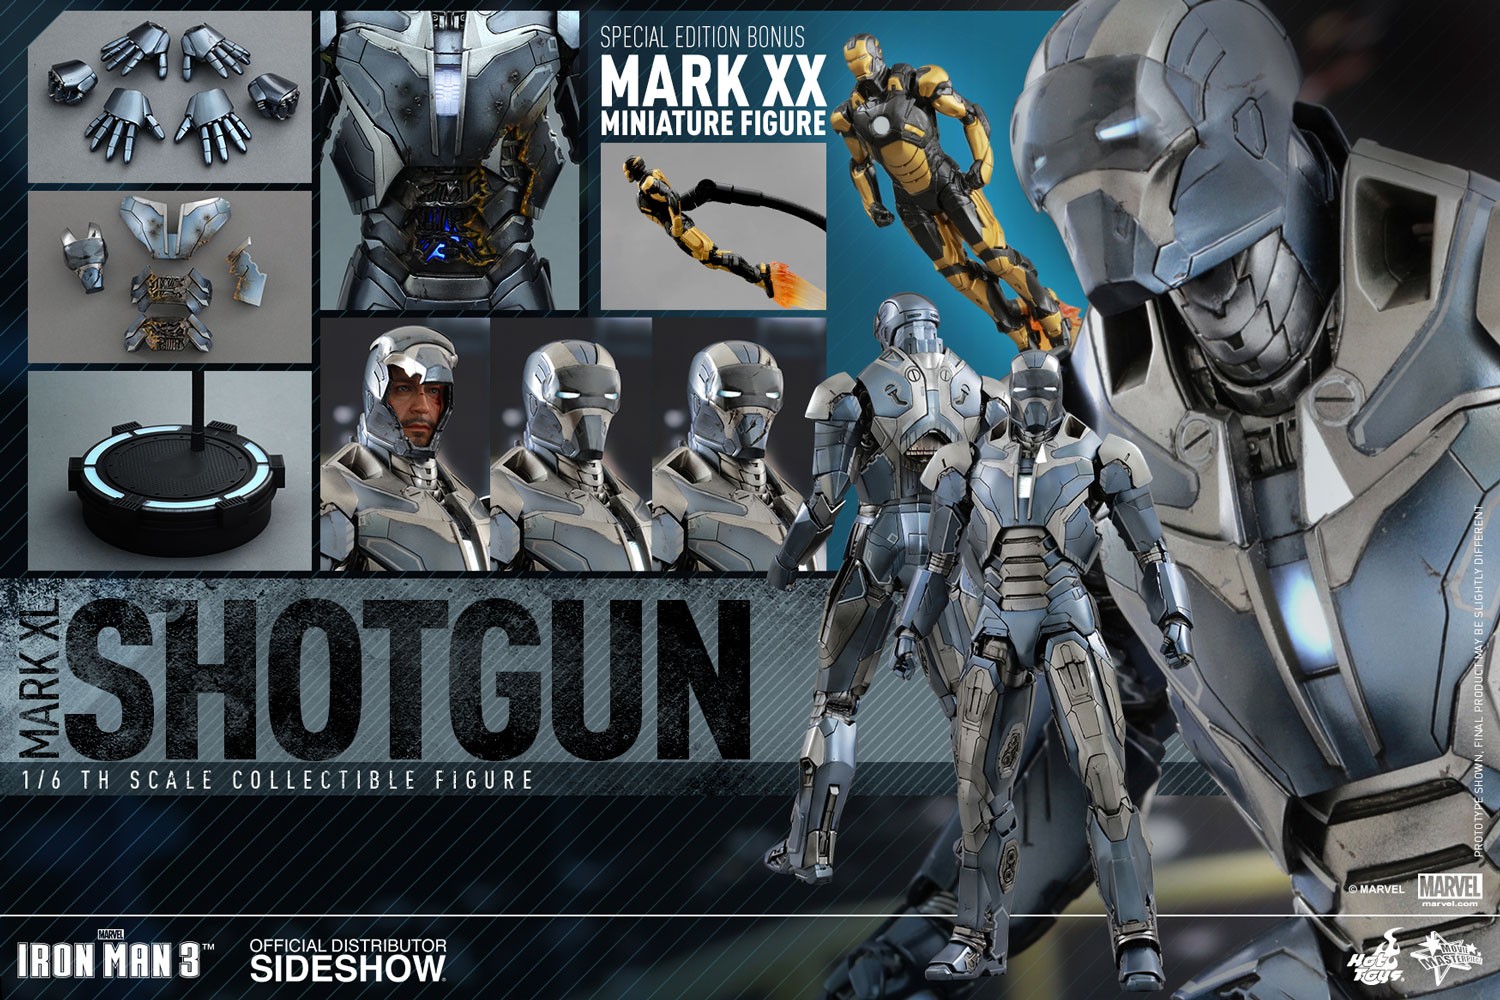 Iron Man Mark XL - Shotgun Exclusive Edition (Prototype Shown) View 3